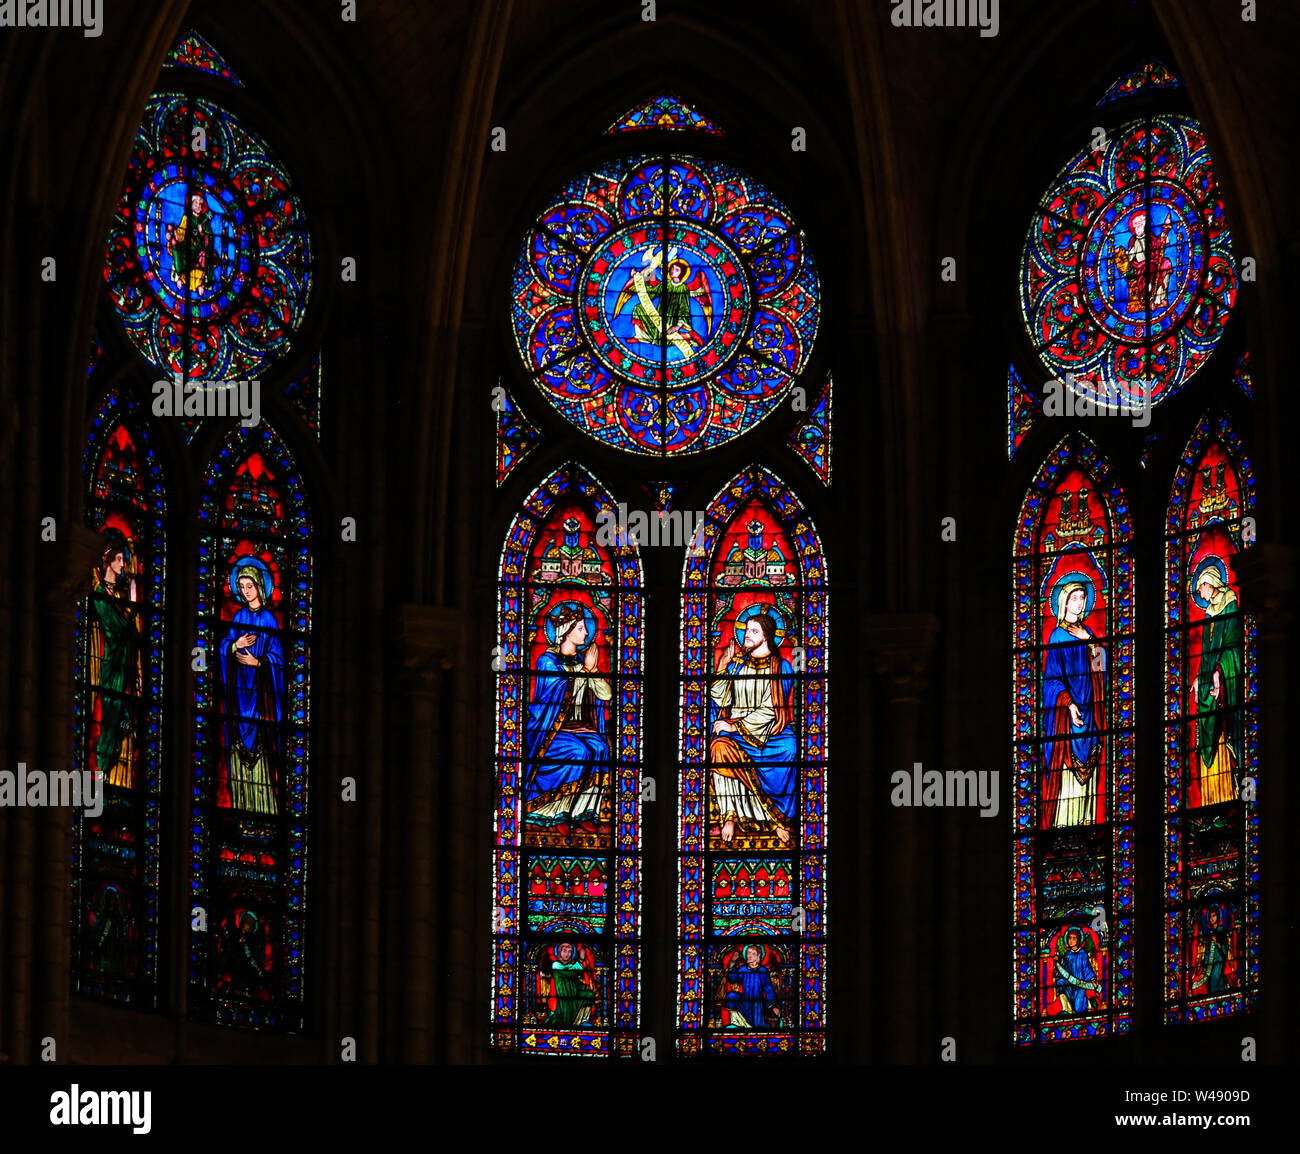 Las vidrieras de la catedral de Notre Dame, París, Francia, representando a Jesús, María y los santos católicos Foto de stock